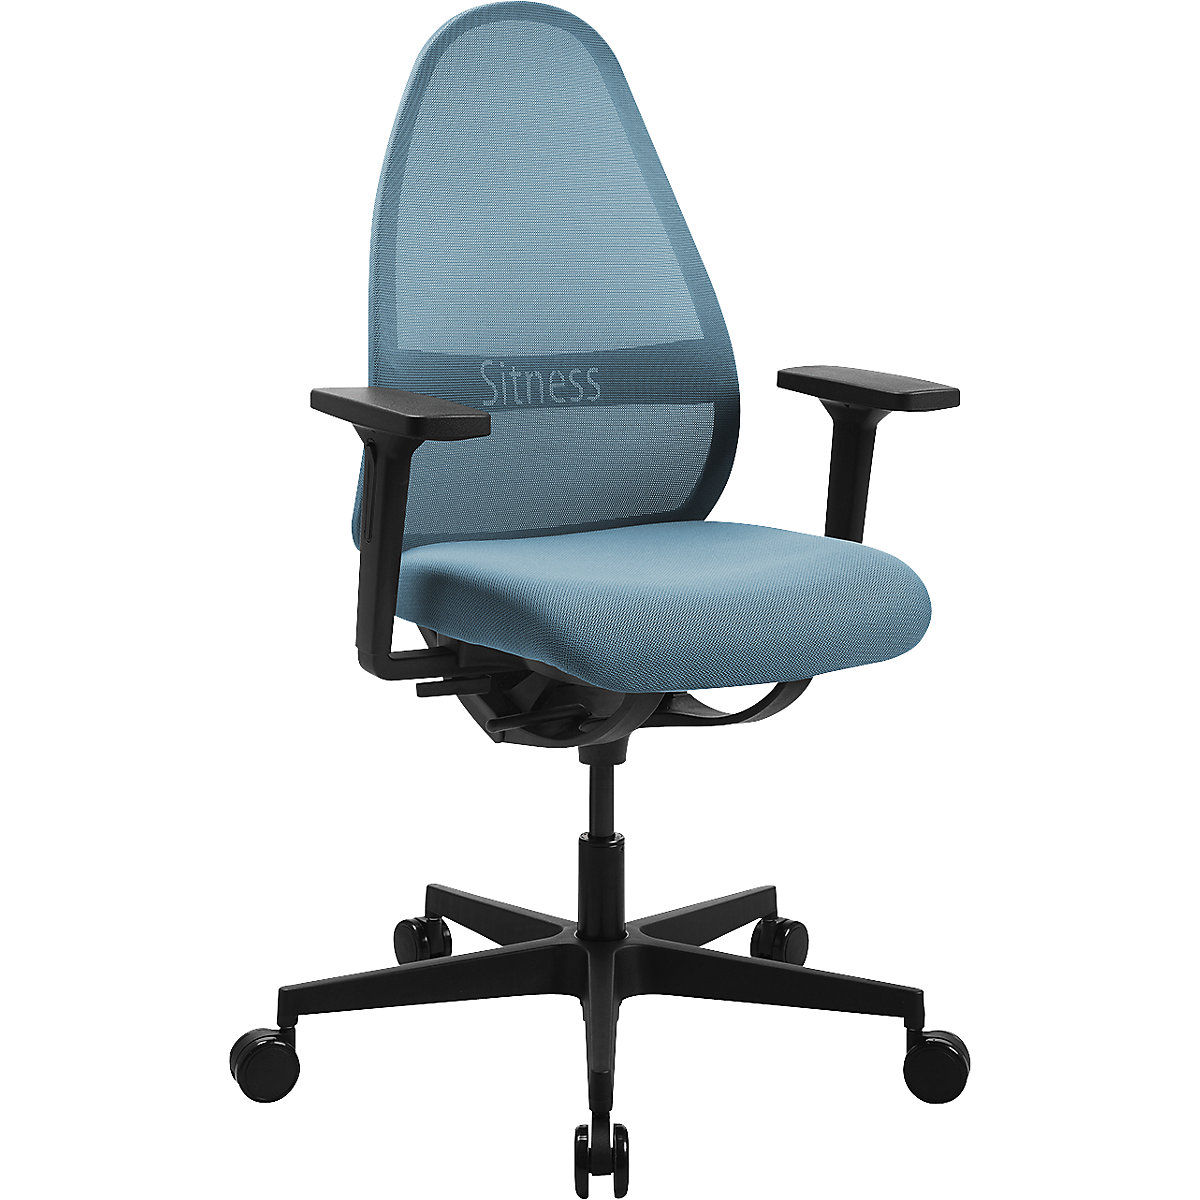 SOFT SITNESS ART office swivel chair - Topstar